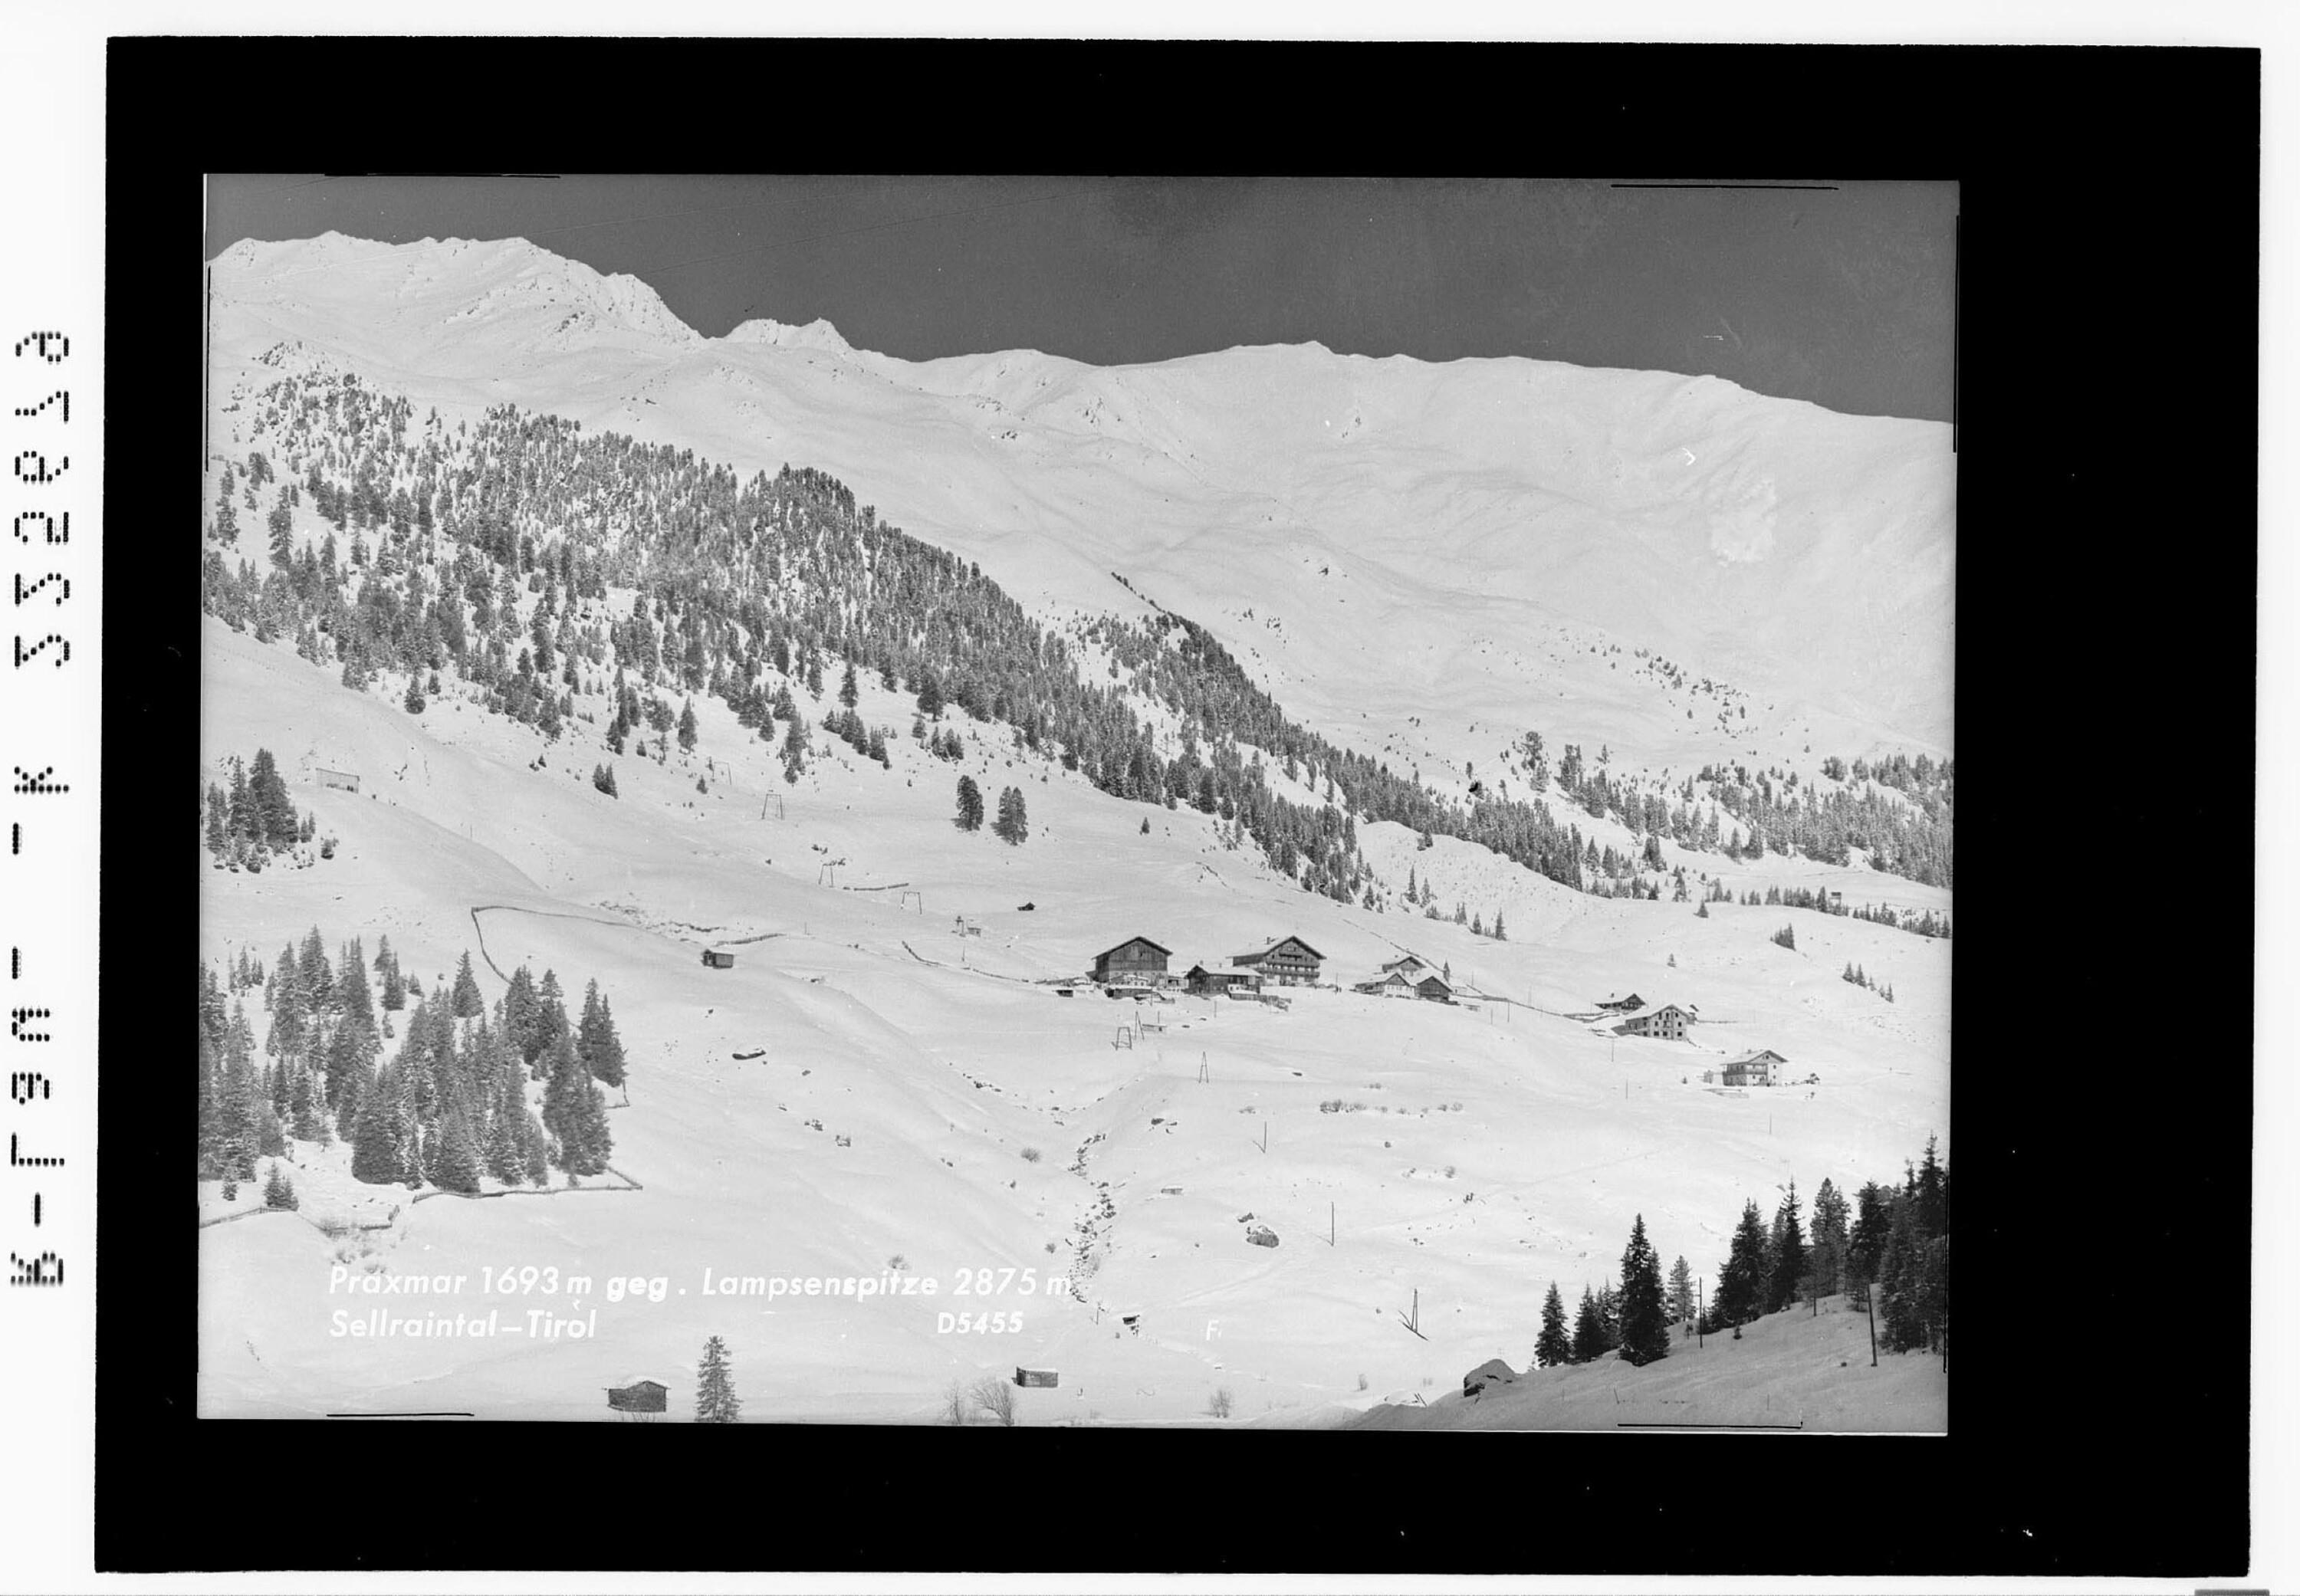 Praxmar 1693 m gegen Lampsenspitze 2875 m / Sellraintal - Tirol></div>


    <hr>
    <div class=